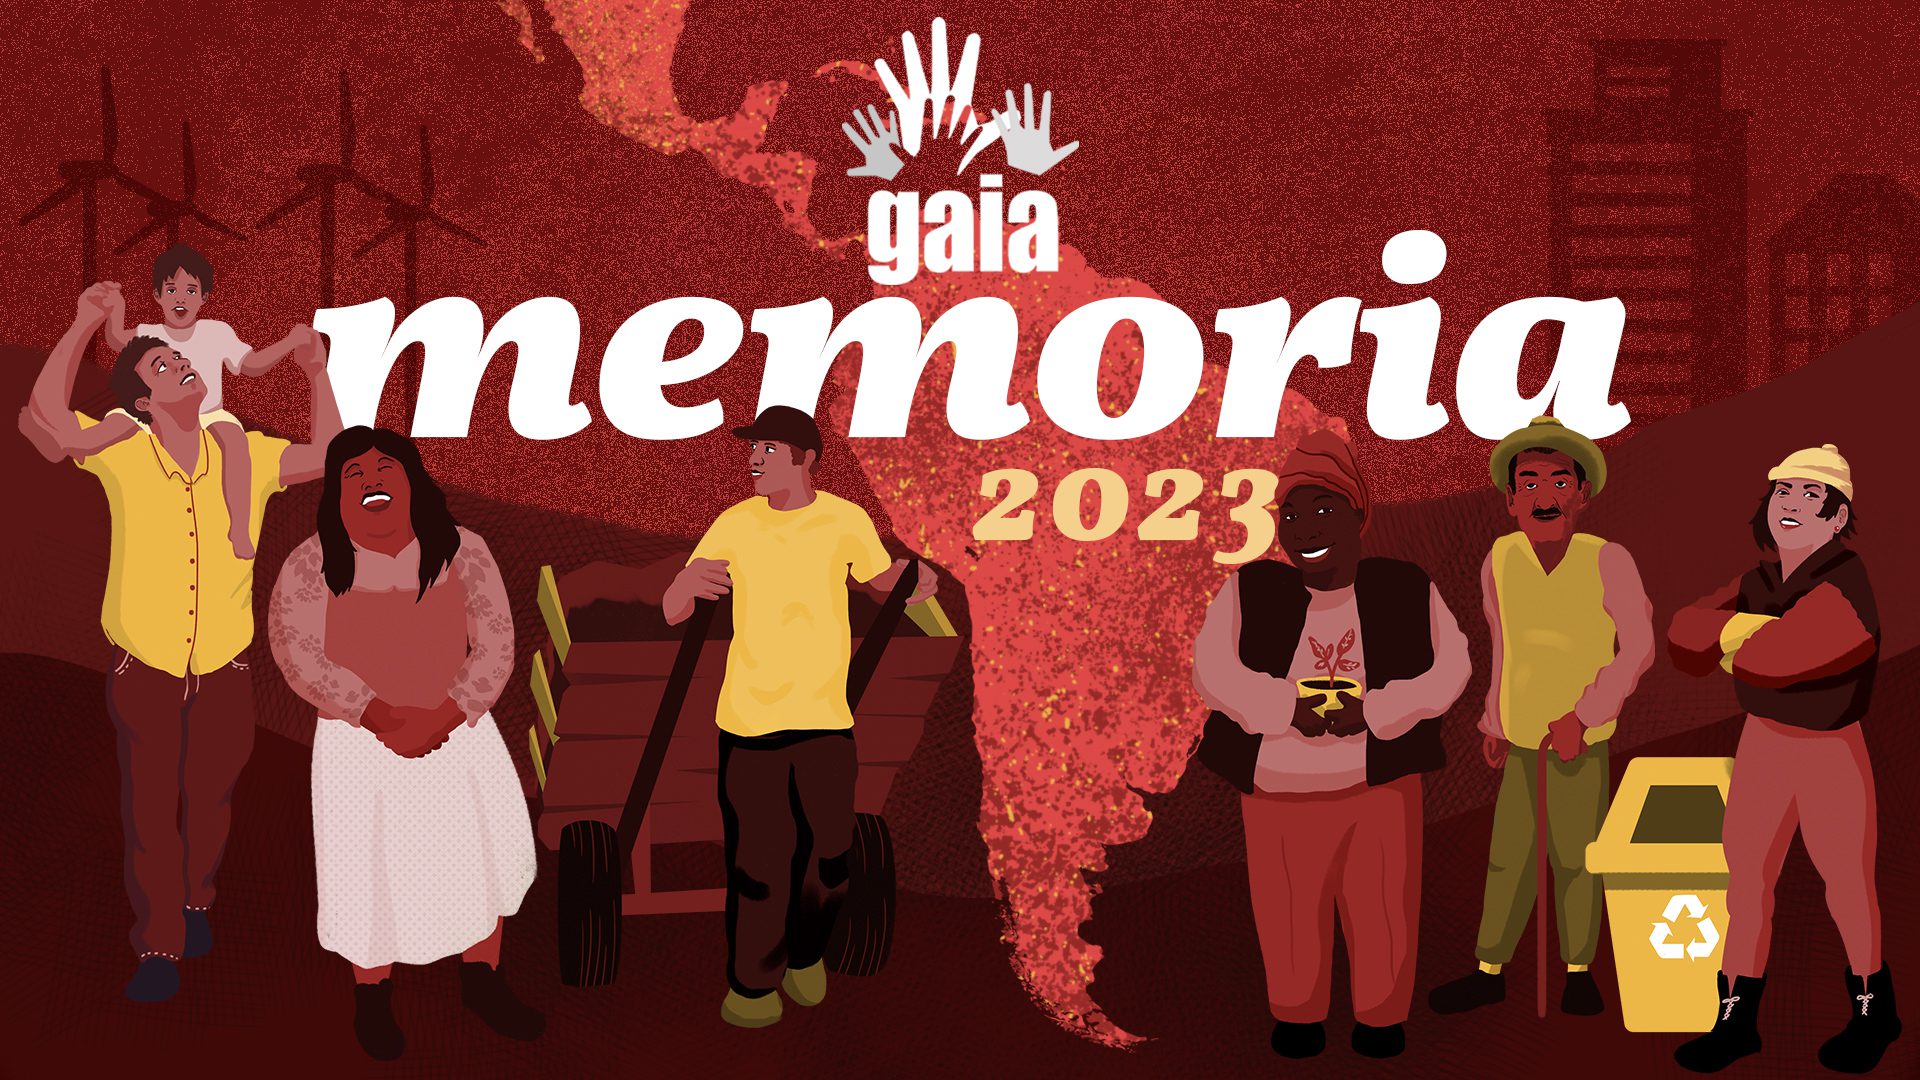 تم نقل ذاكرة GAIA 2023. وهي حمراء مع خريطة لأمريكا اللاتينية و6 شخصيات توضيحية تمثل أعضاء GAIA.